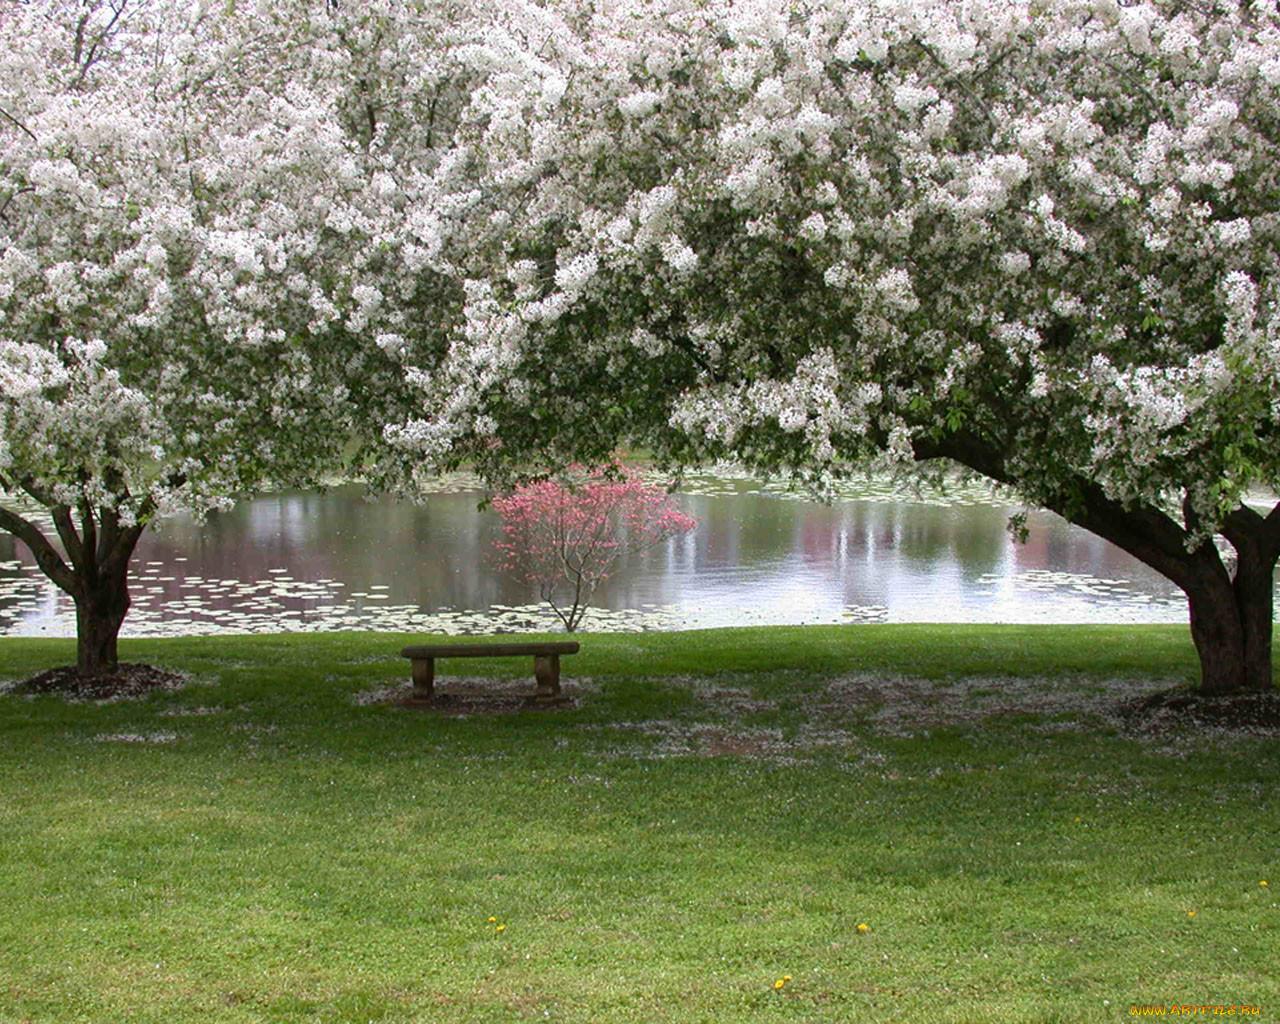 Картинки весна, деревья, листья, природа, цветы, широкоформатные, мимоза -  обои 1280x1024, картинка №133338